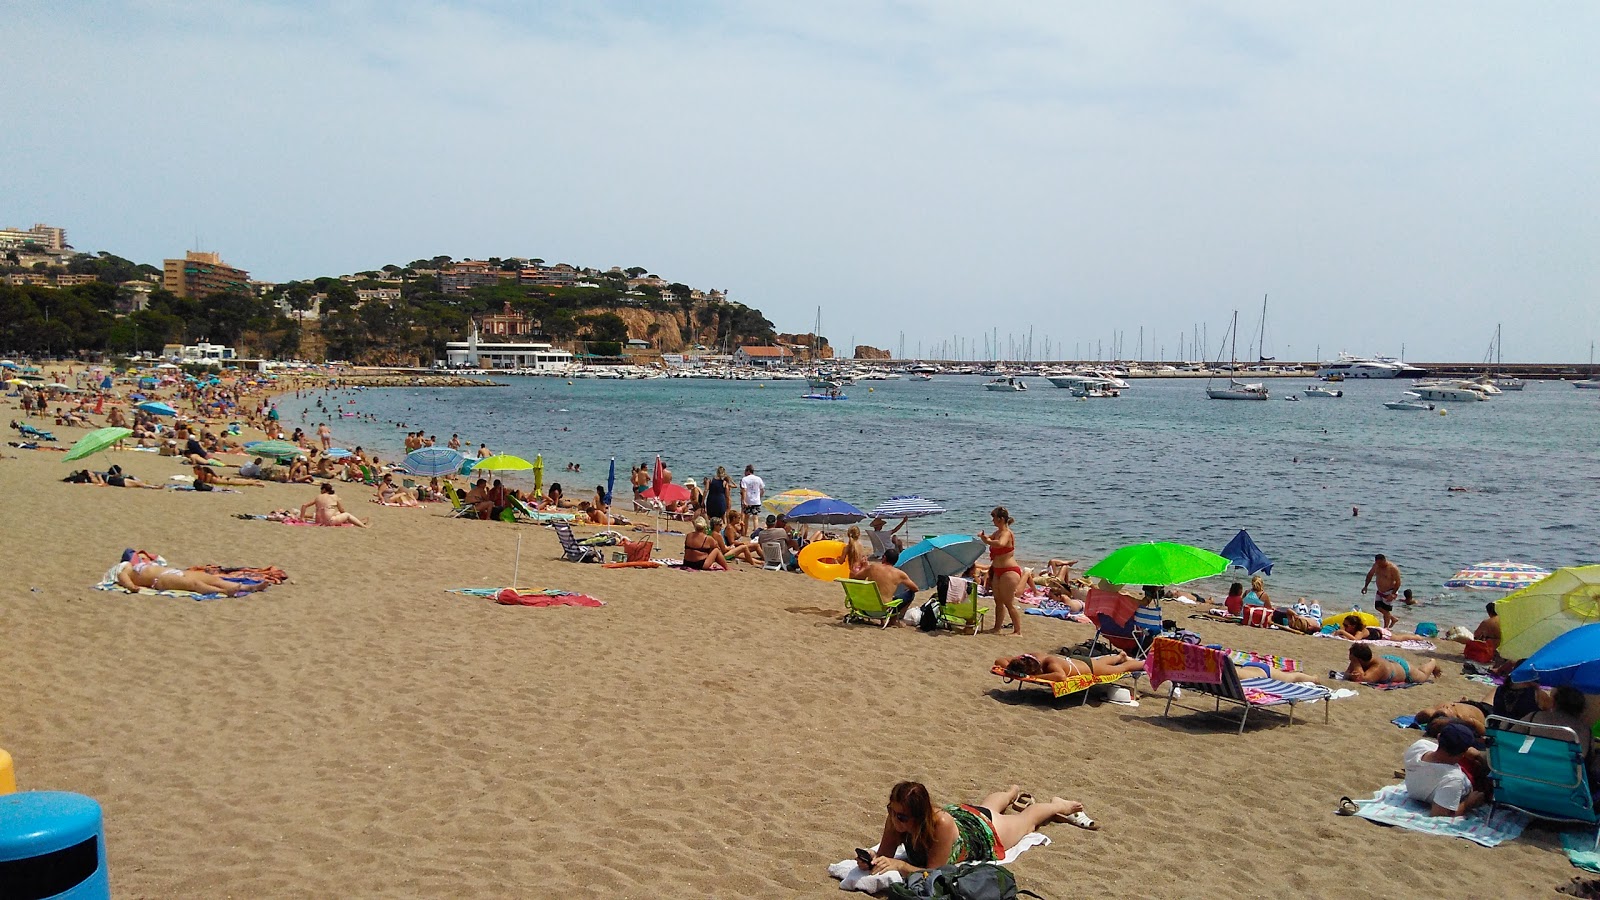 Playa de Sant Feliu的照片 具有非常干净级别的清洁度